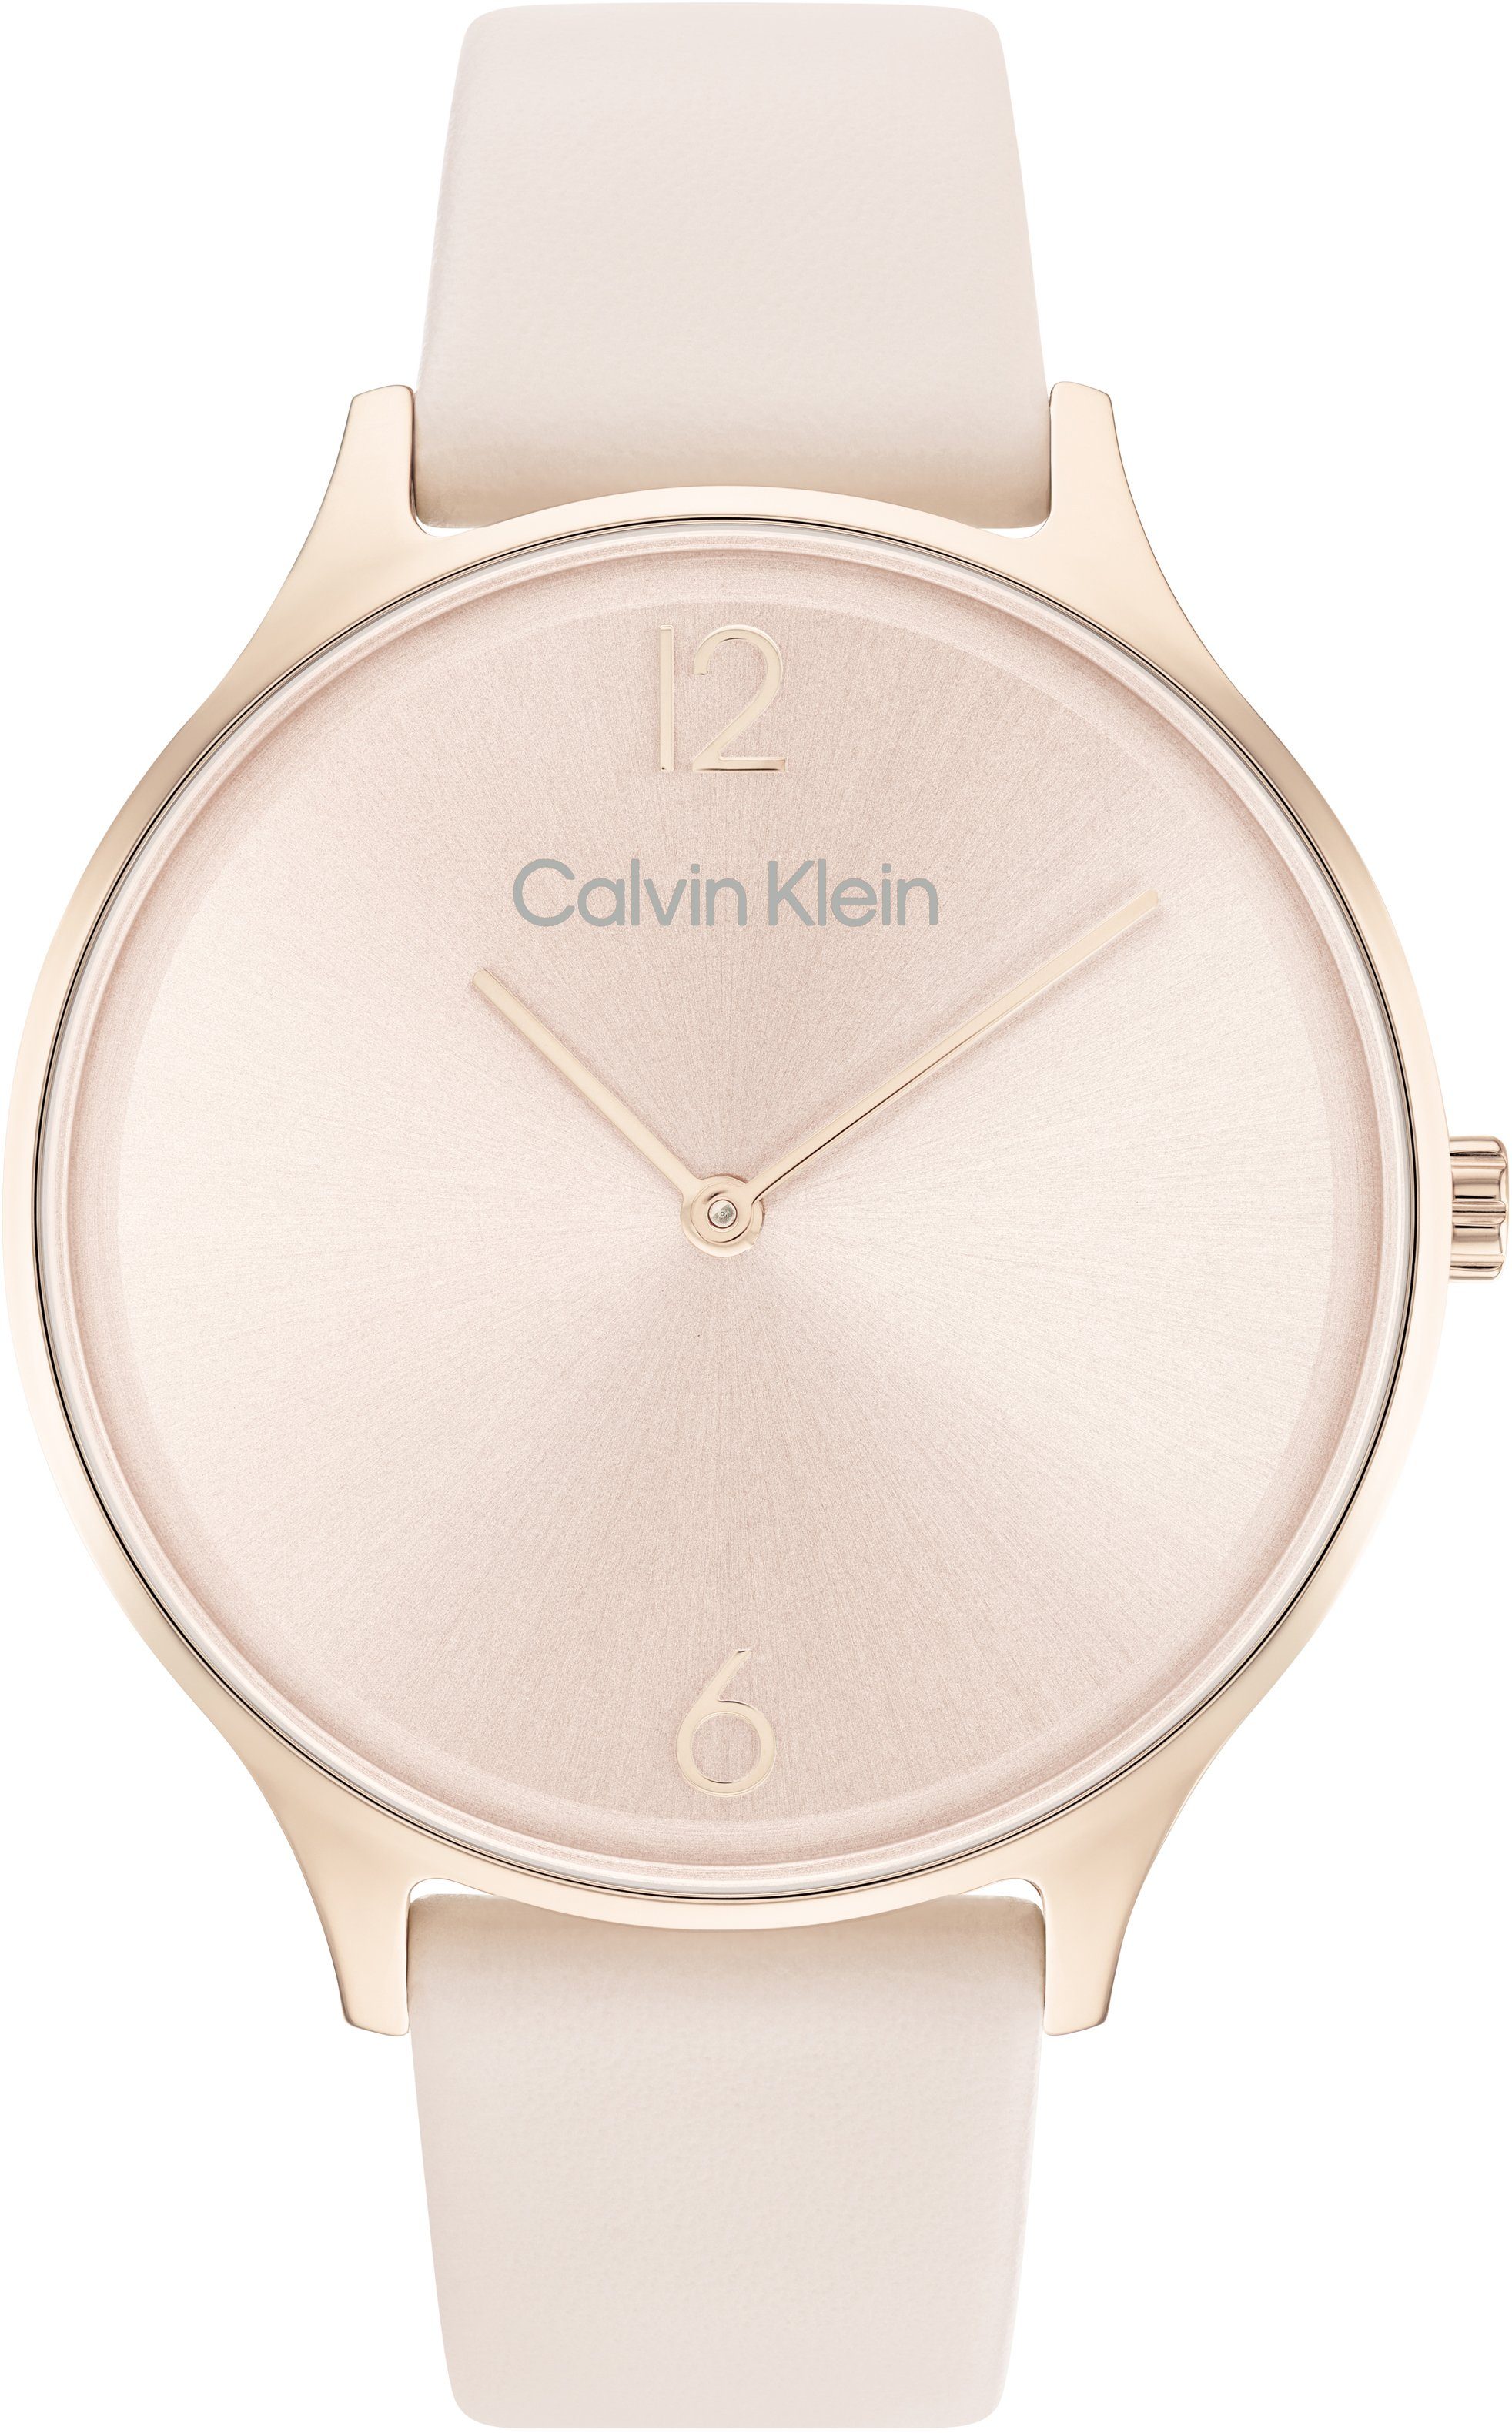 Calvin Klein Quarzuhr Timeless 2H, 25200009, Armbanduhr, Damenuhr, Mineralglas, IP-Beschichtung